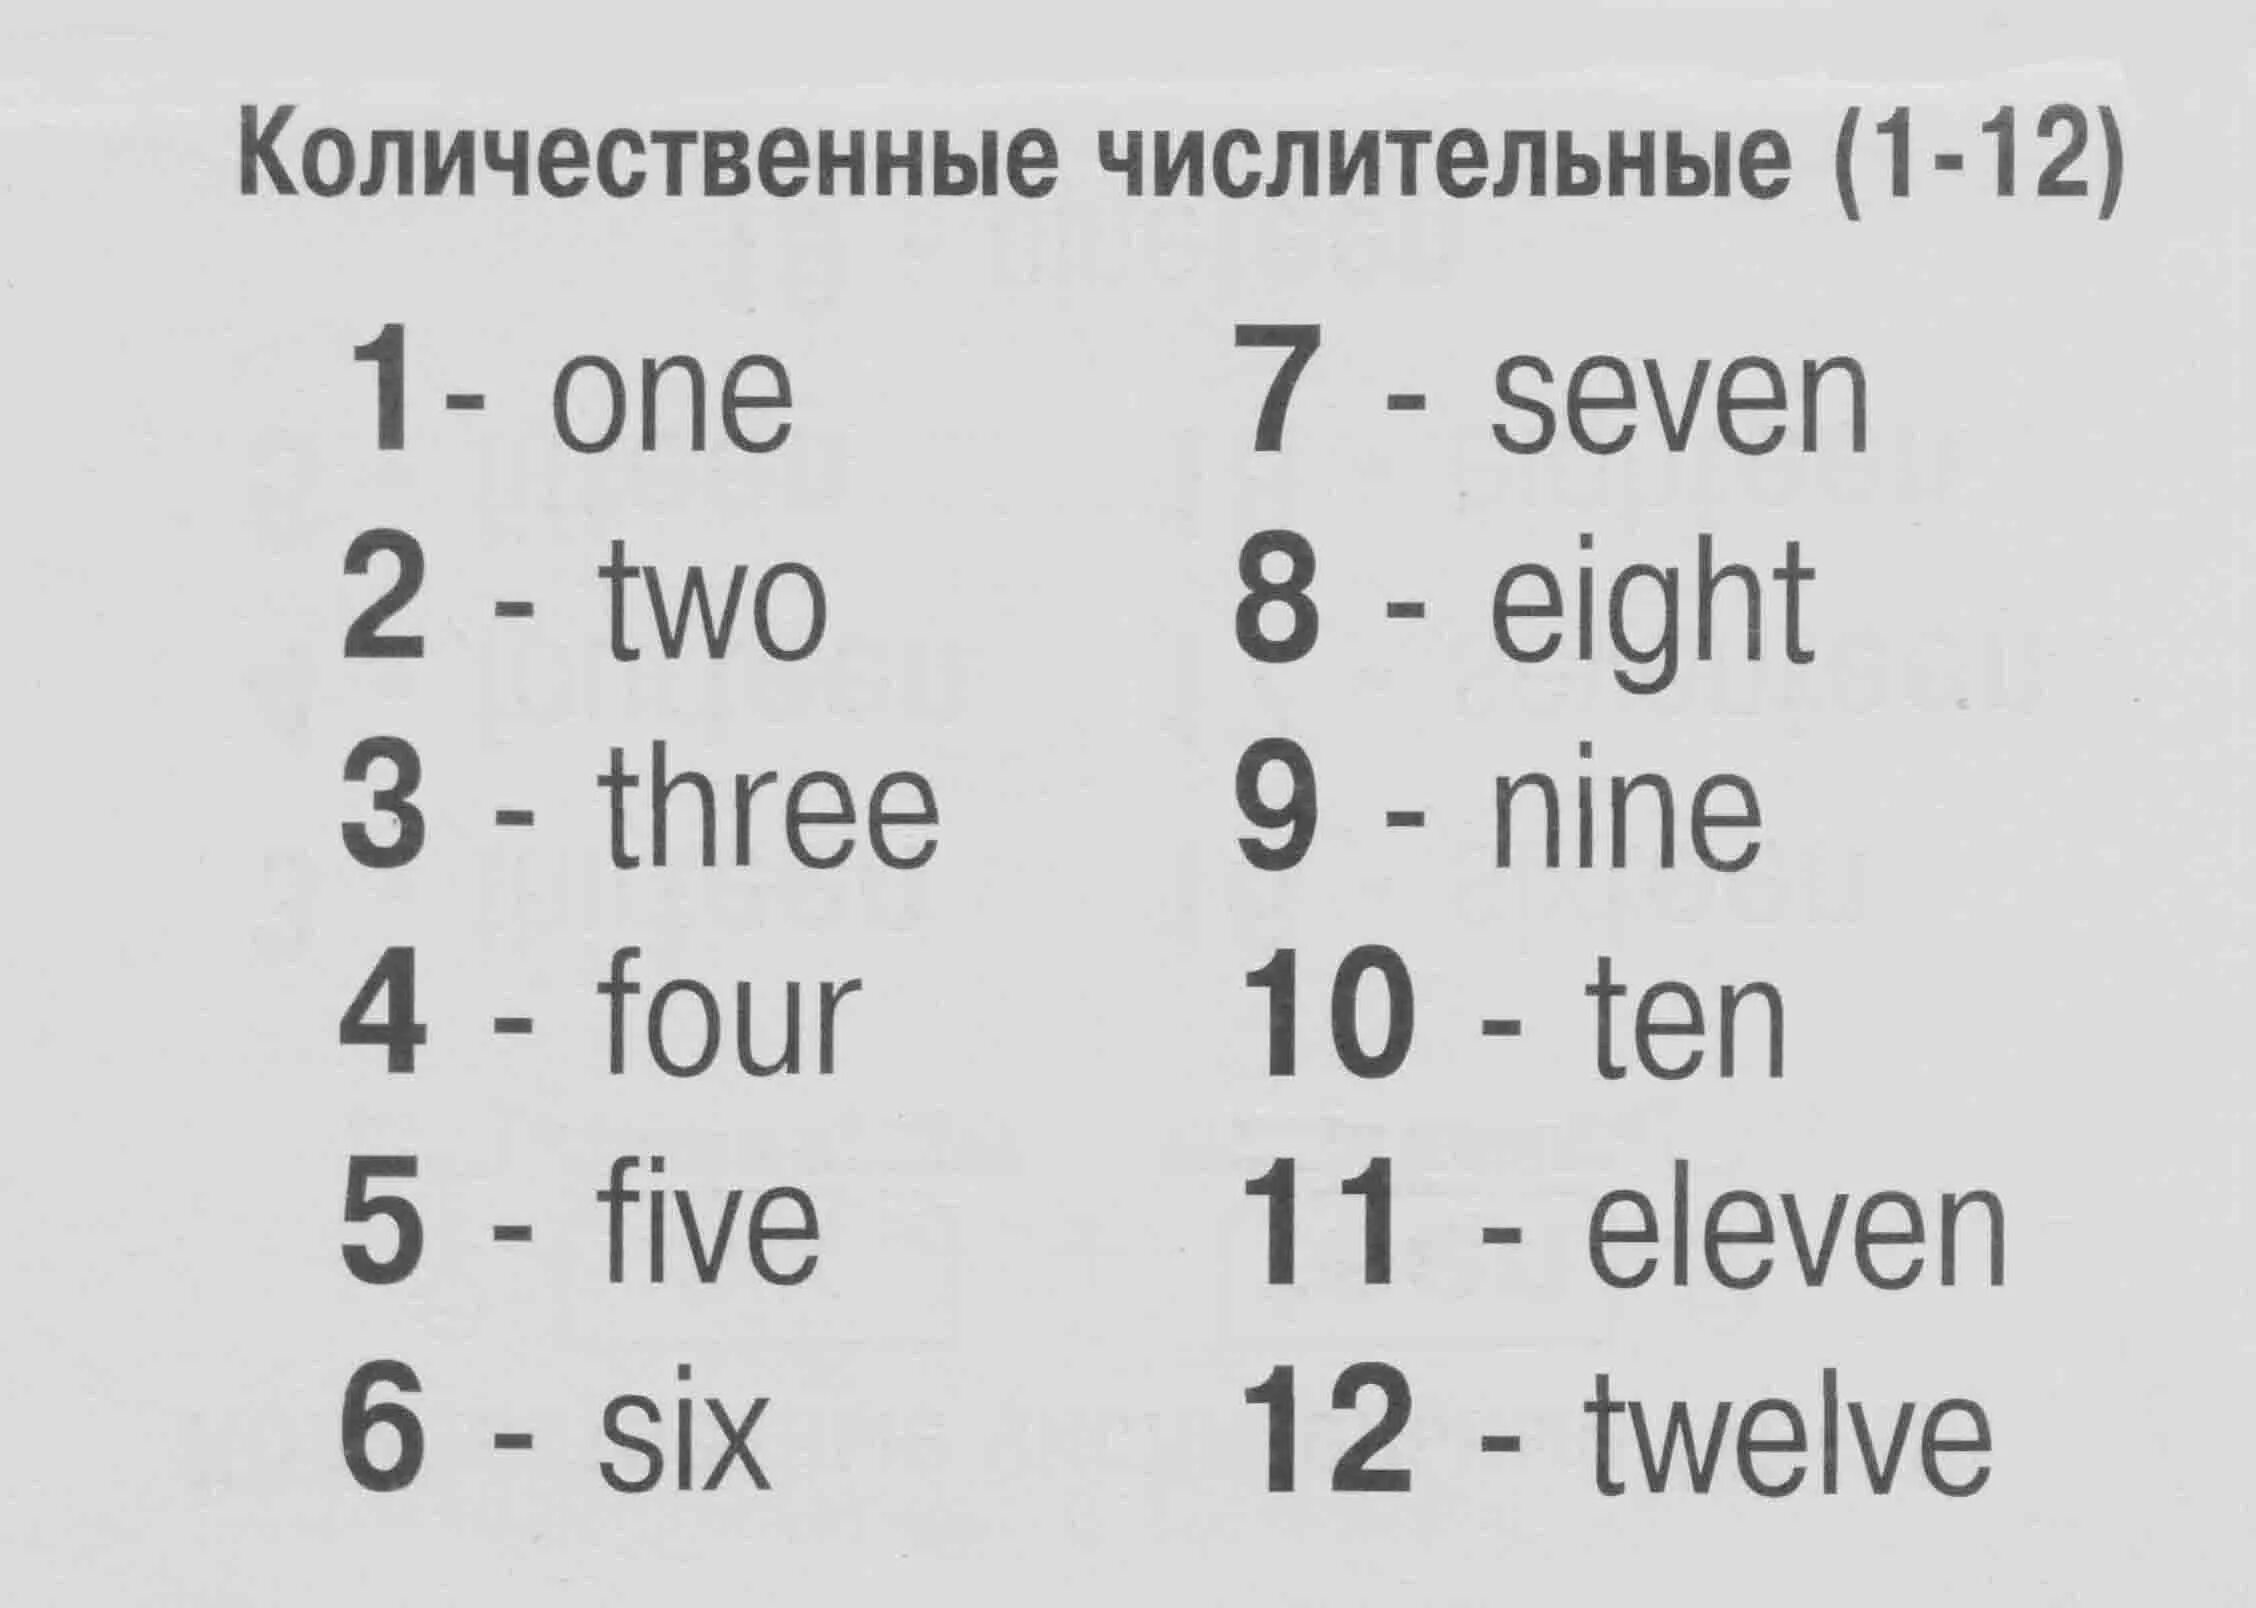 Как пишутся цифры по английски от 1 до 10. Числа от 1 до 10 на английском как пишется. Как пишется цифры по английскому от 1 до 12. Английские цифры от 1 до 10 как пишутся по английскому языку.